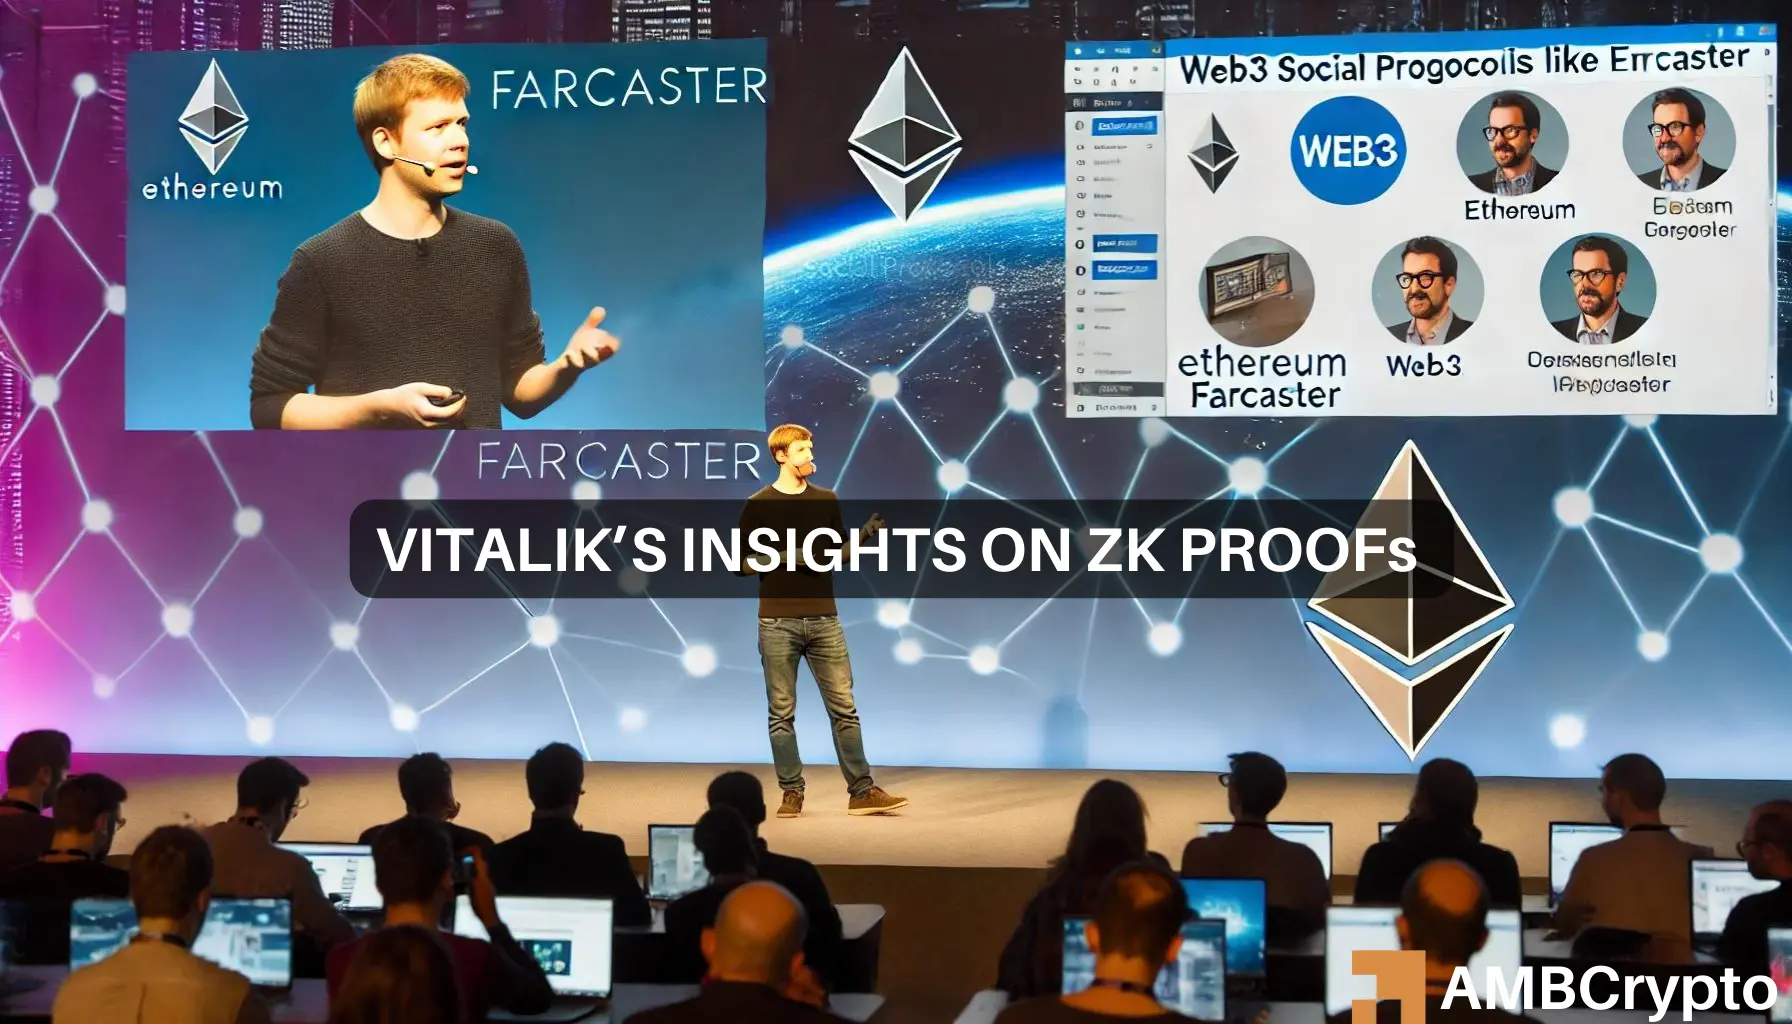 Ethereum’s Vitalik Buterin advocates for ZK Proofs in Web3 social media